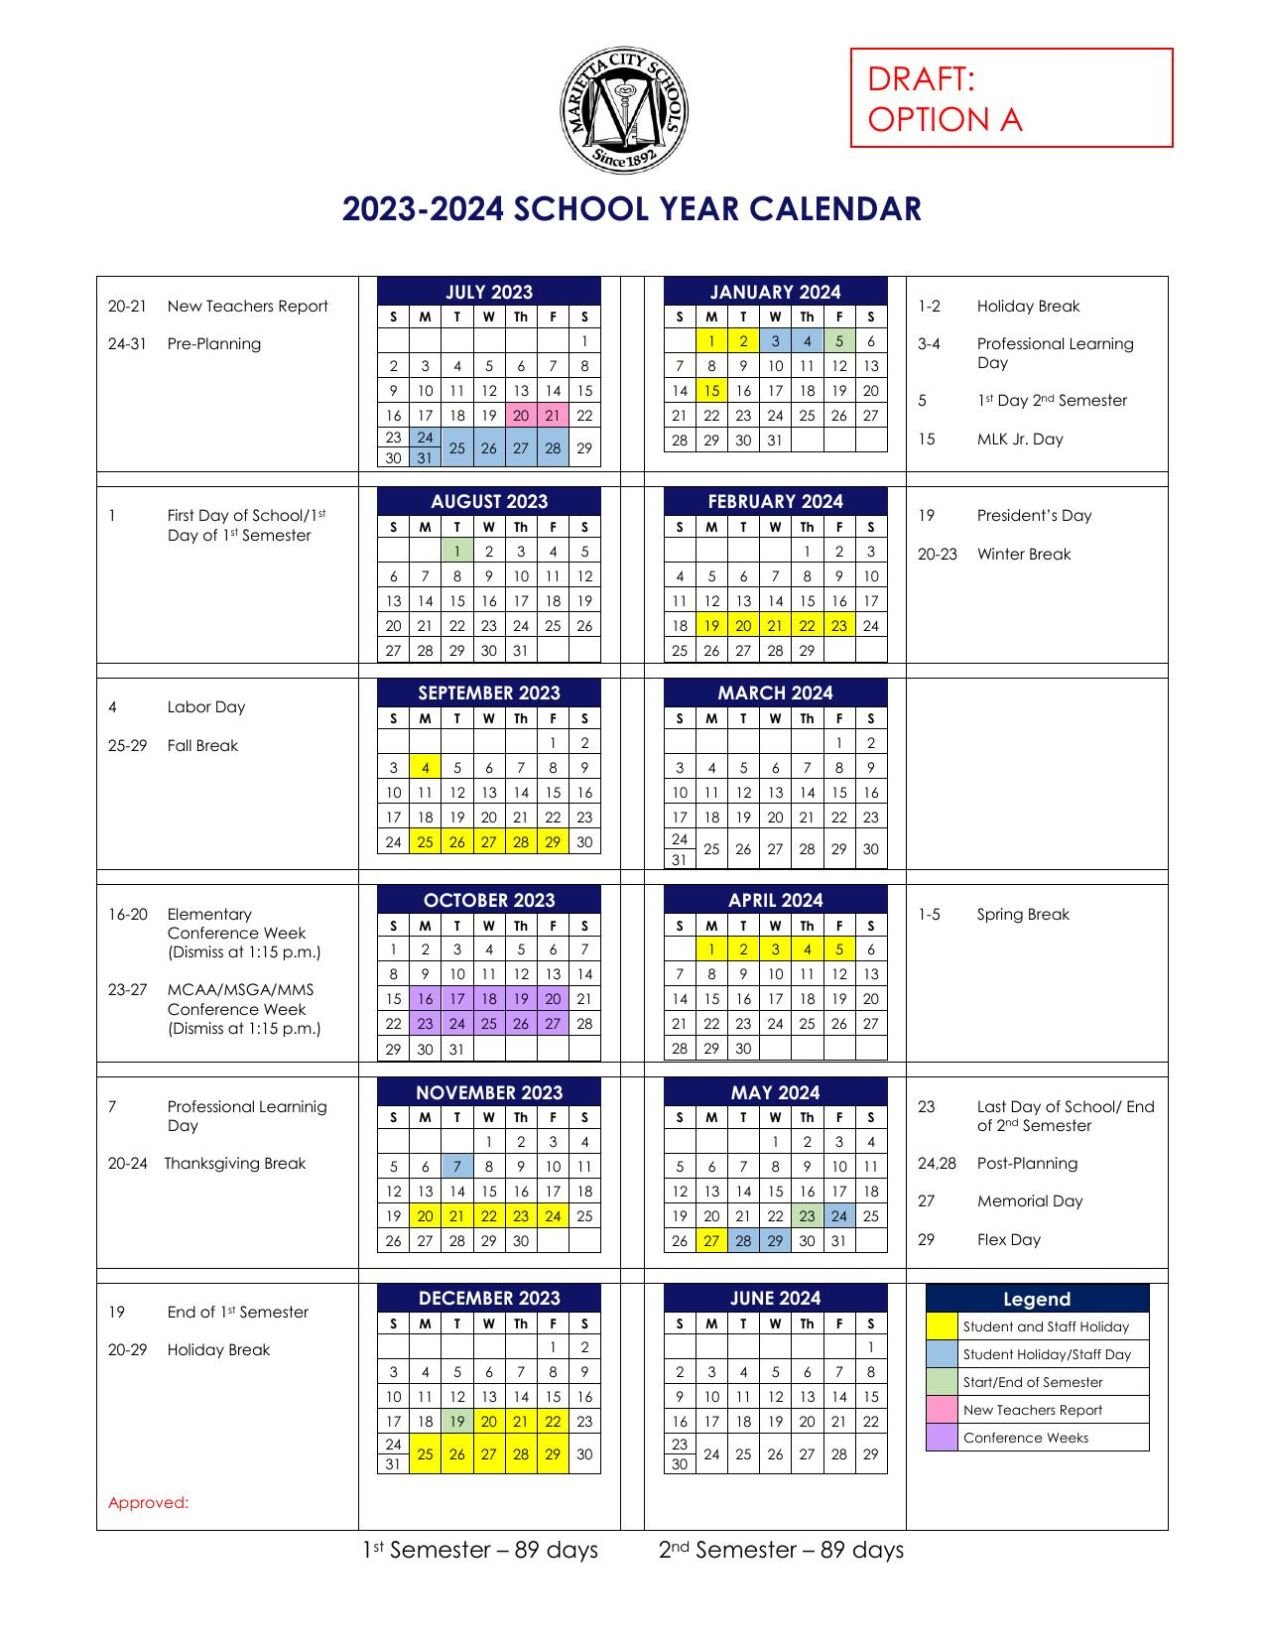 School Calendar 2023 To 2023 Qatar – Get Calendar 2023 Update